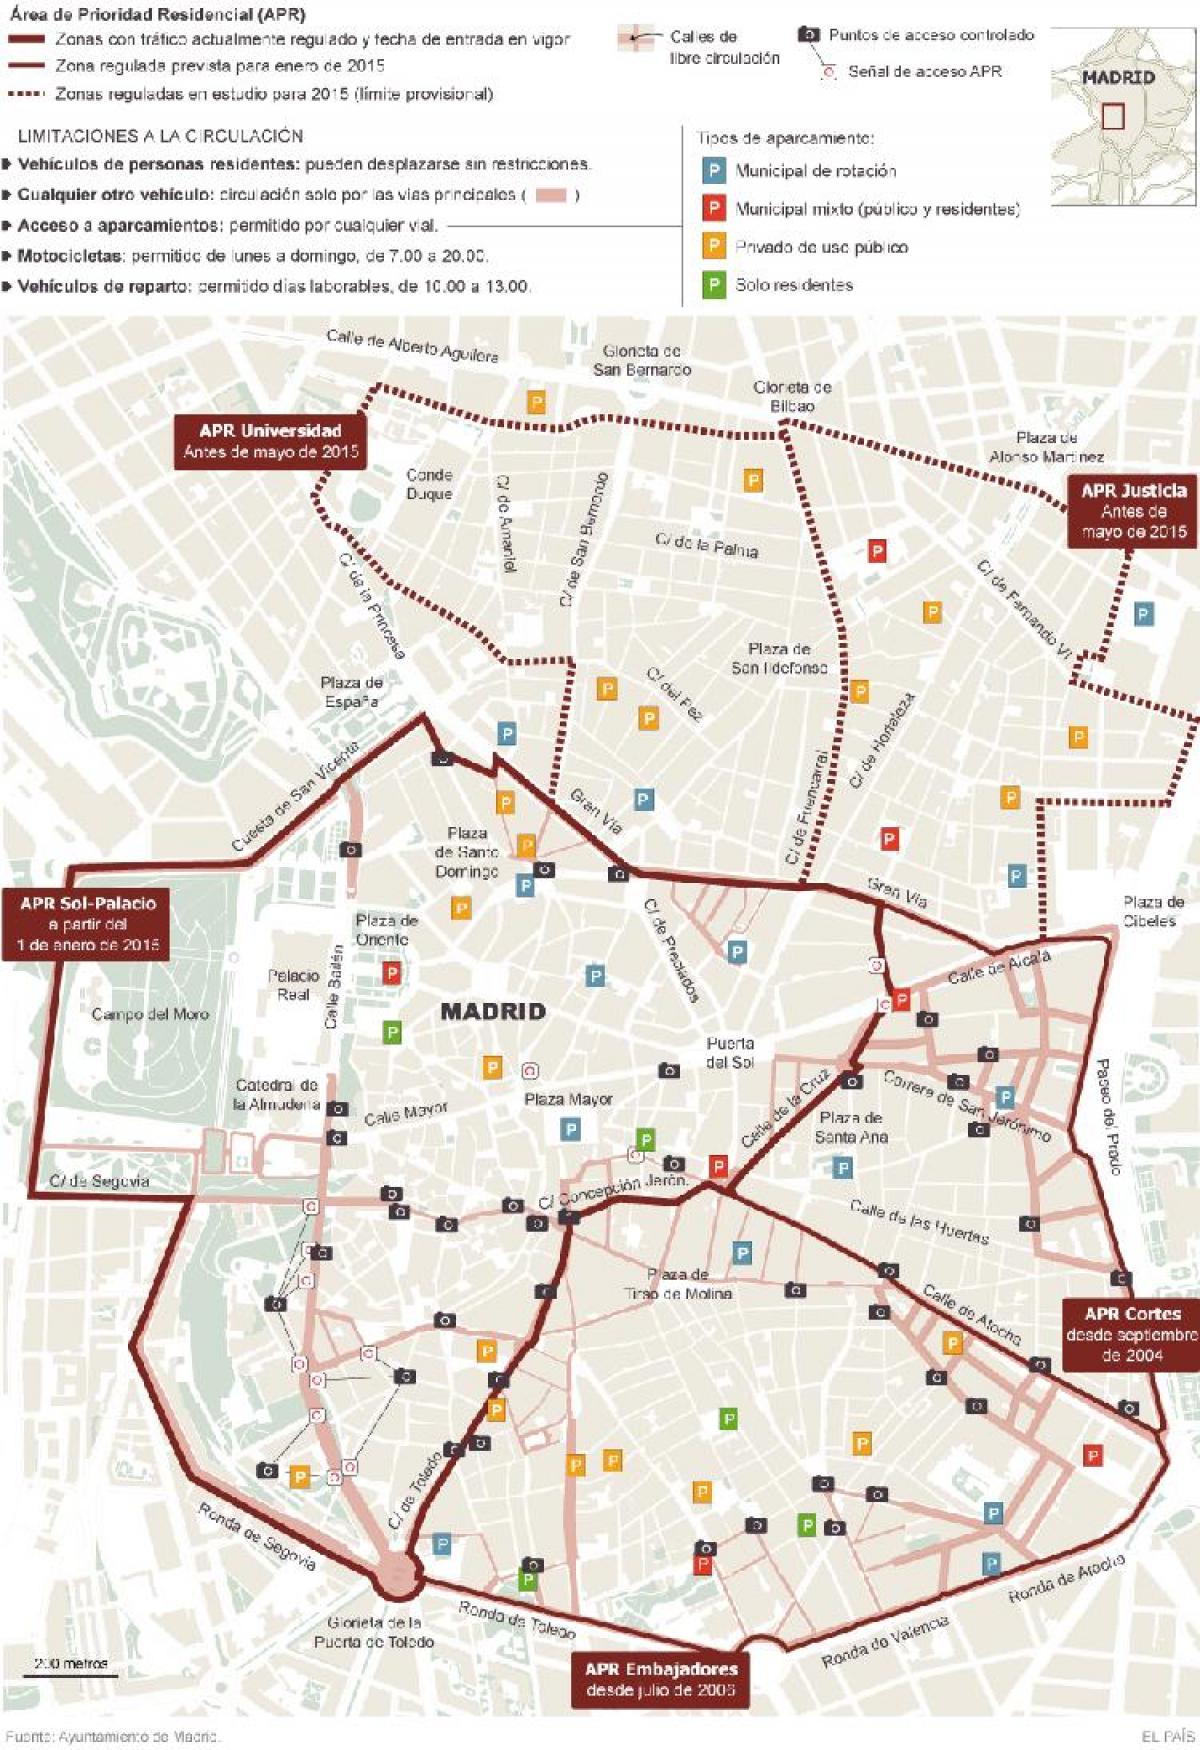 kort af Madrid bílastæði